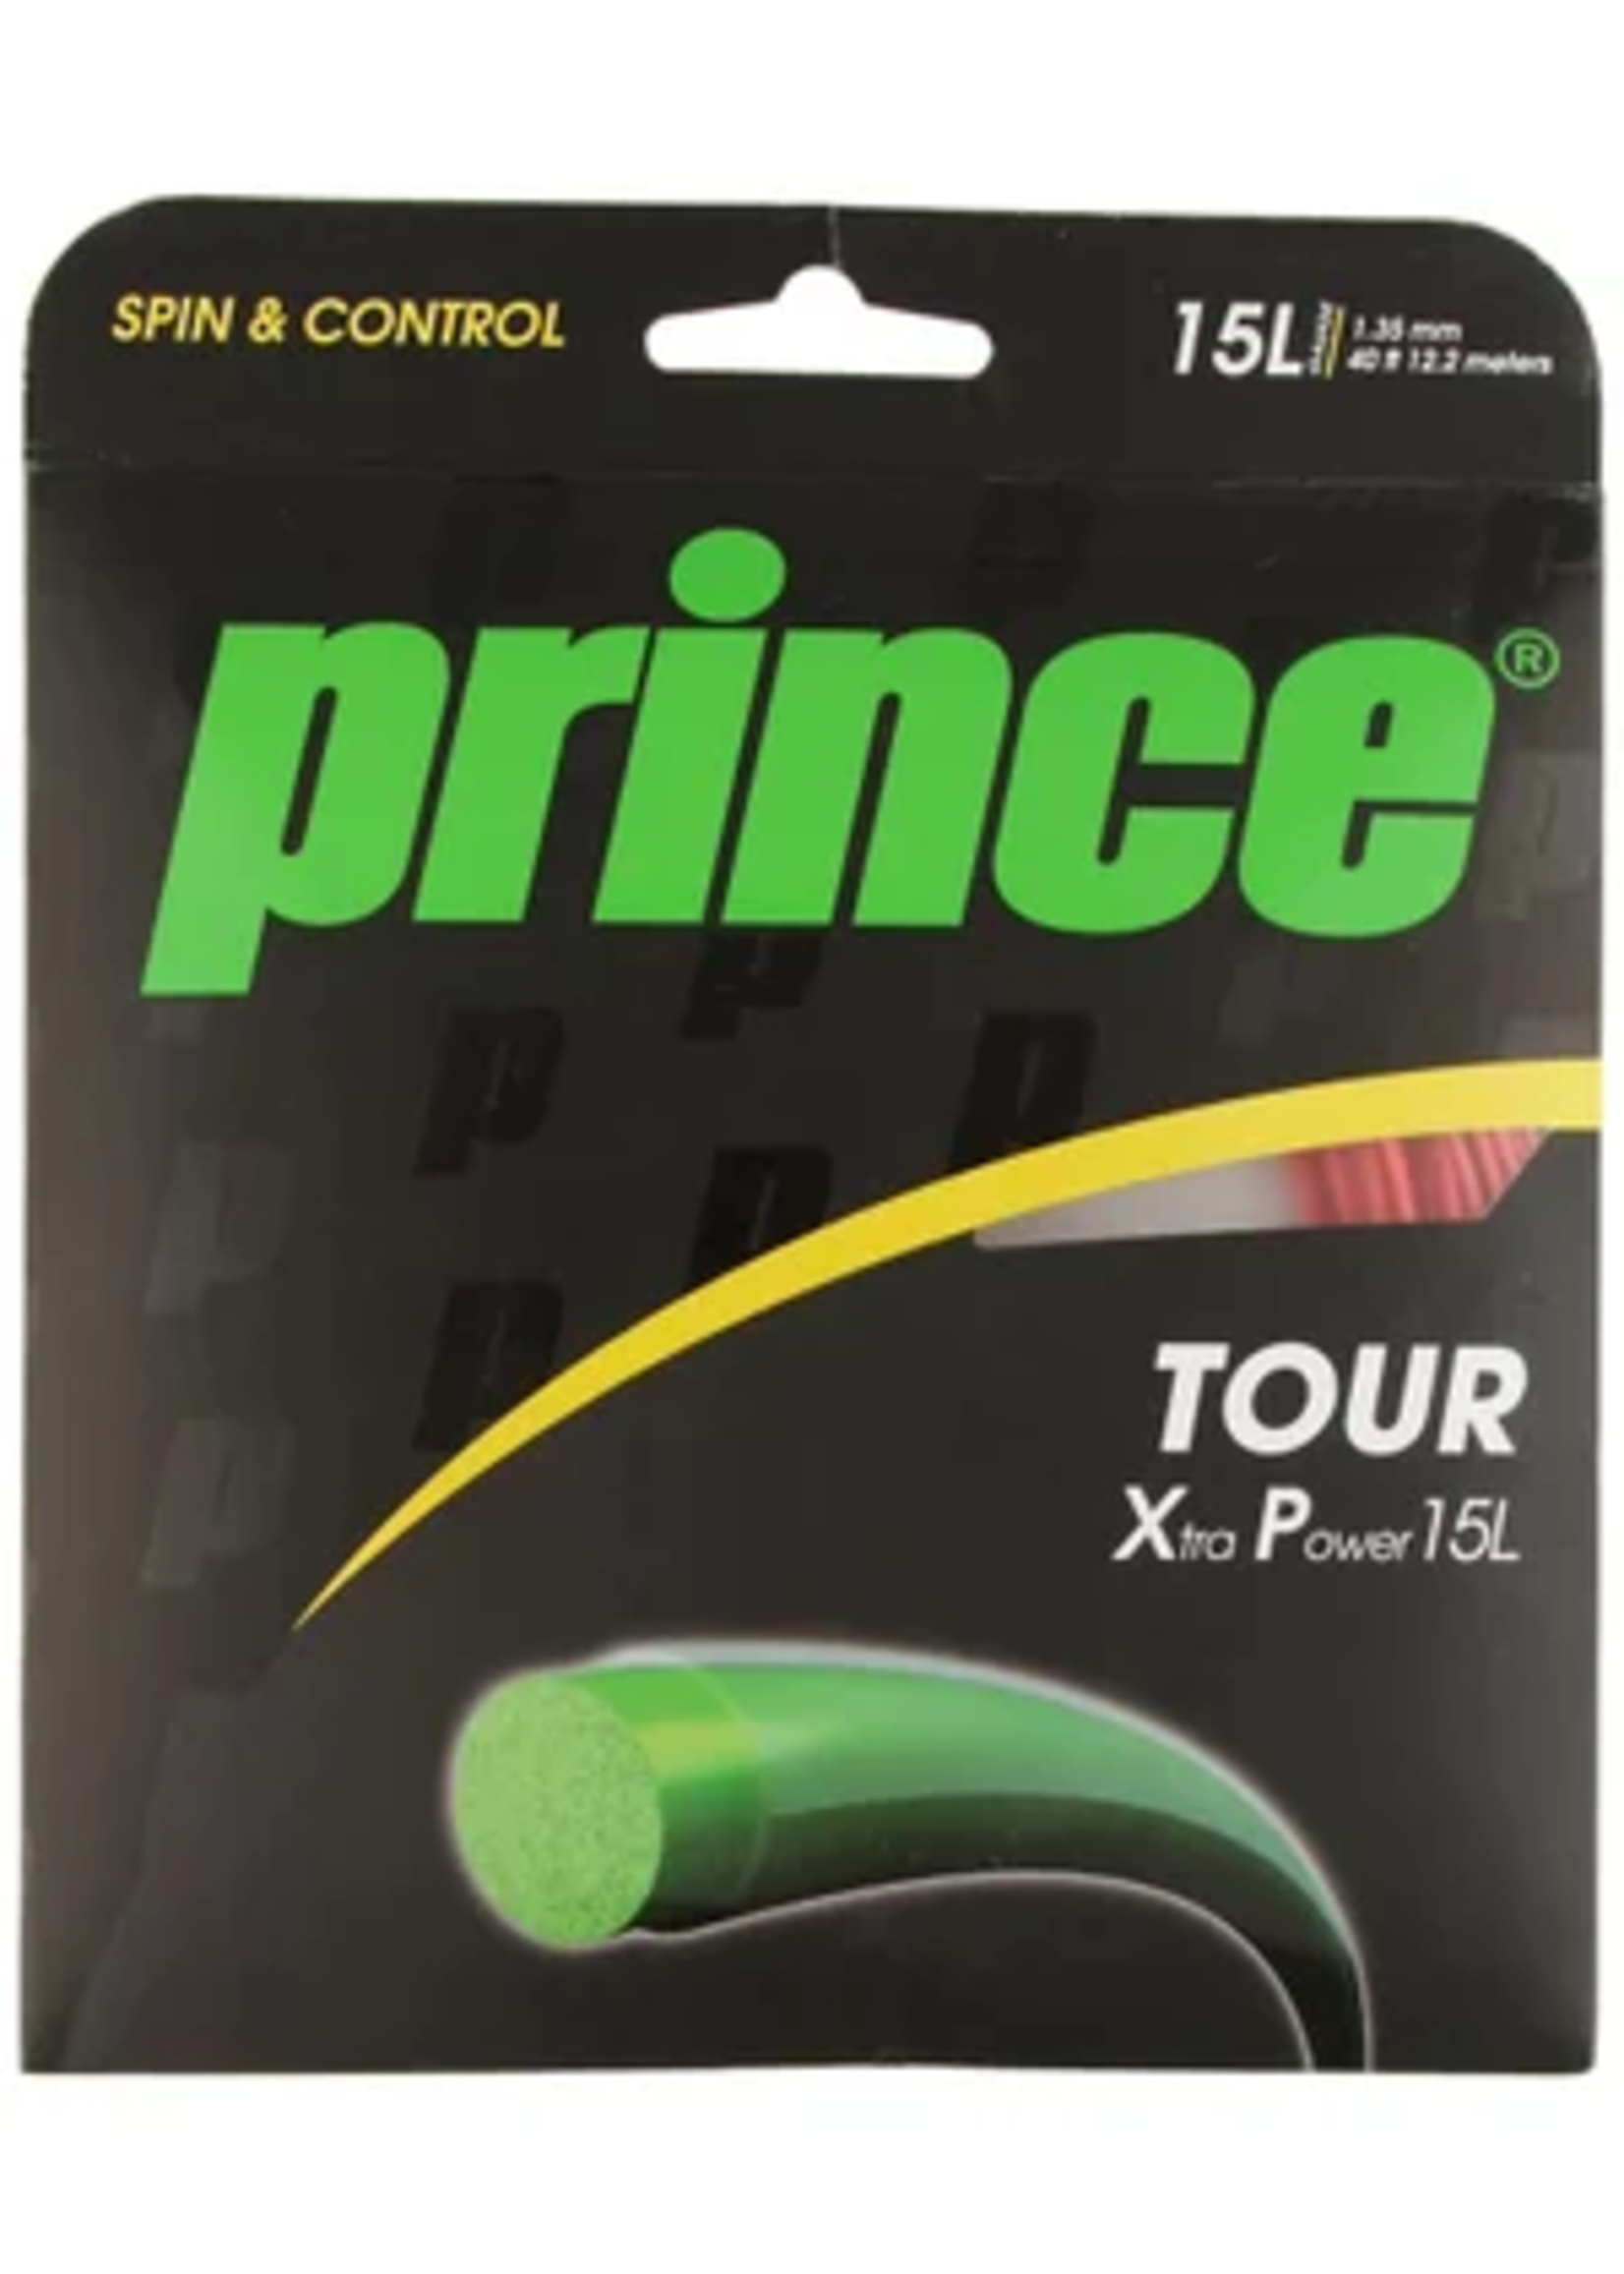 Prince Tour XP